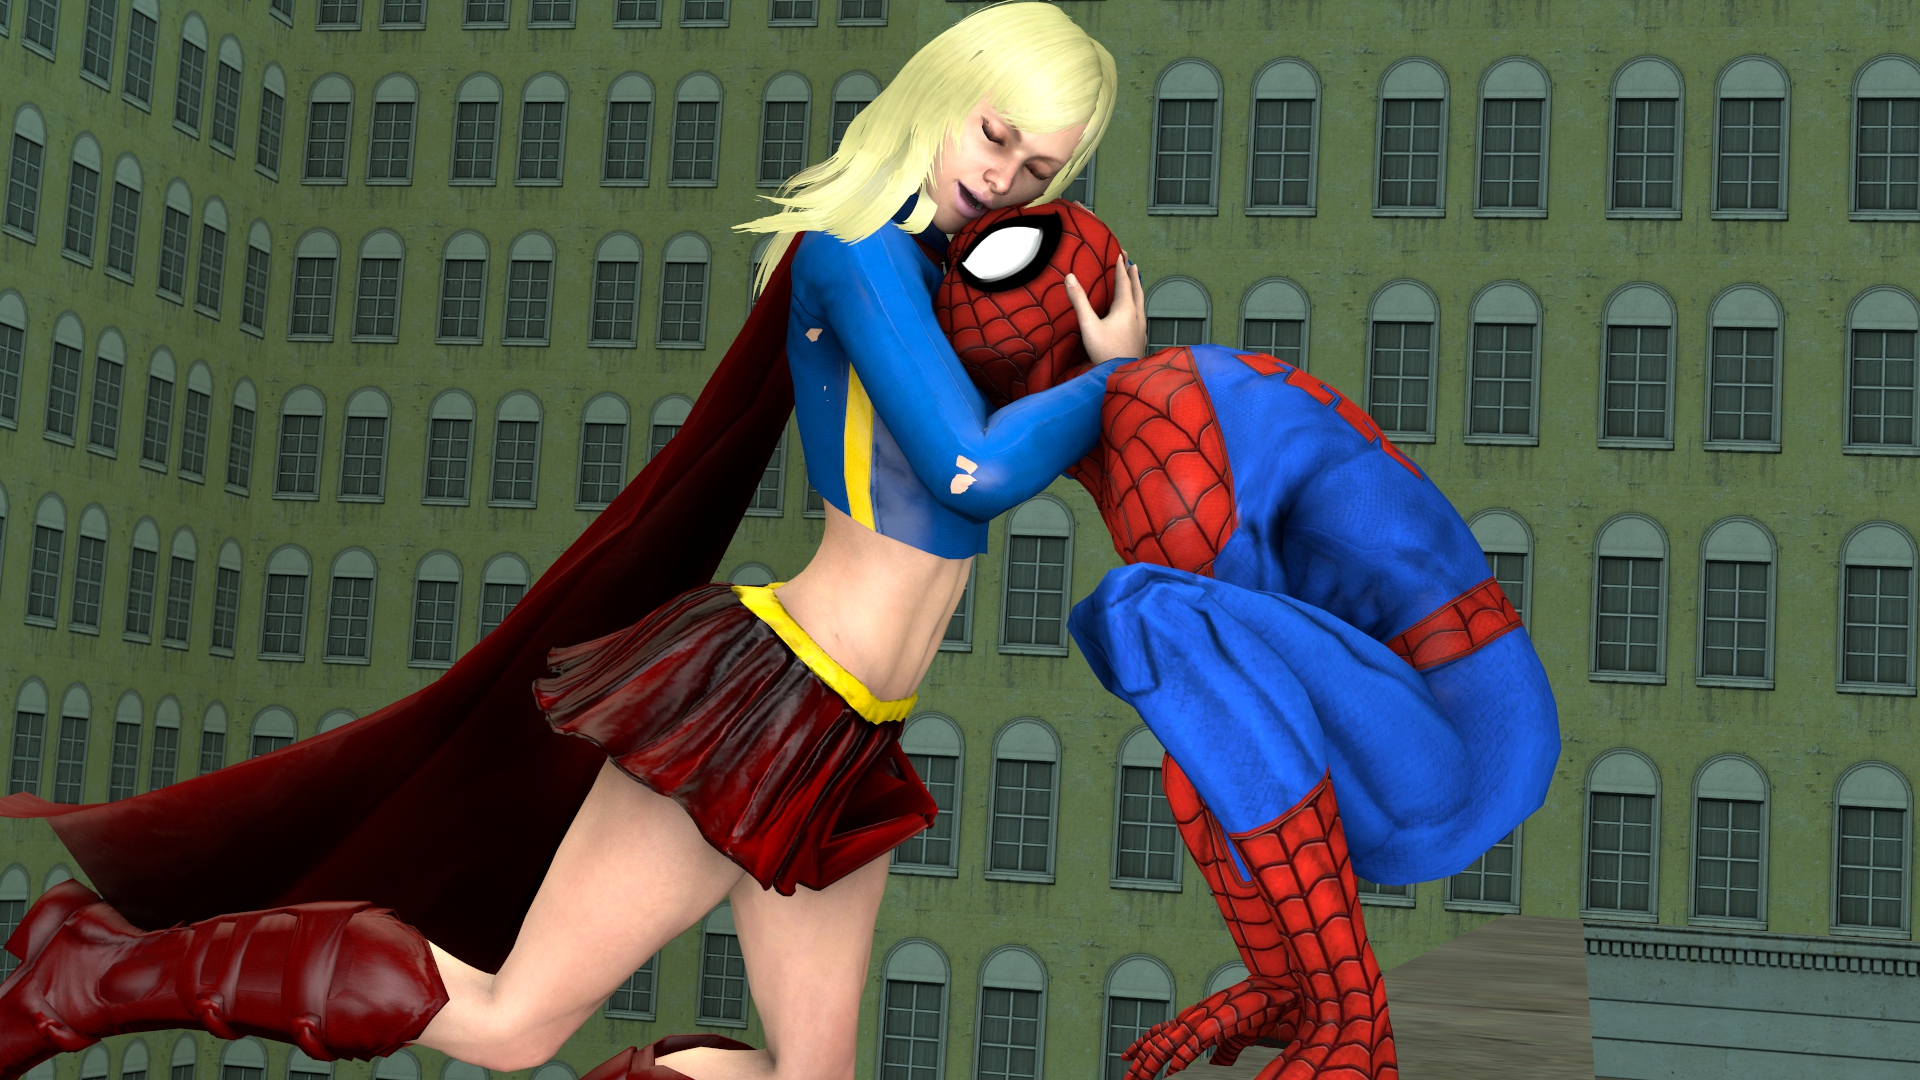 Super Girl visiting Spider-Man